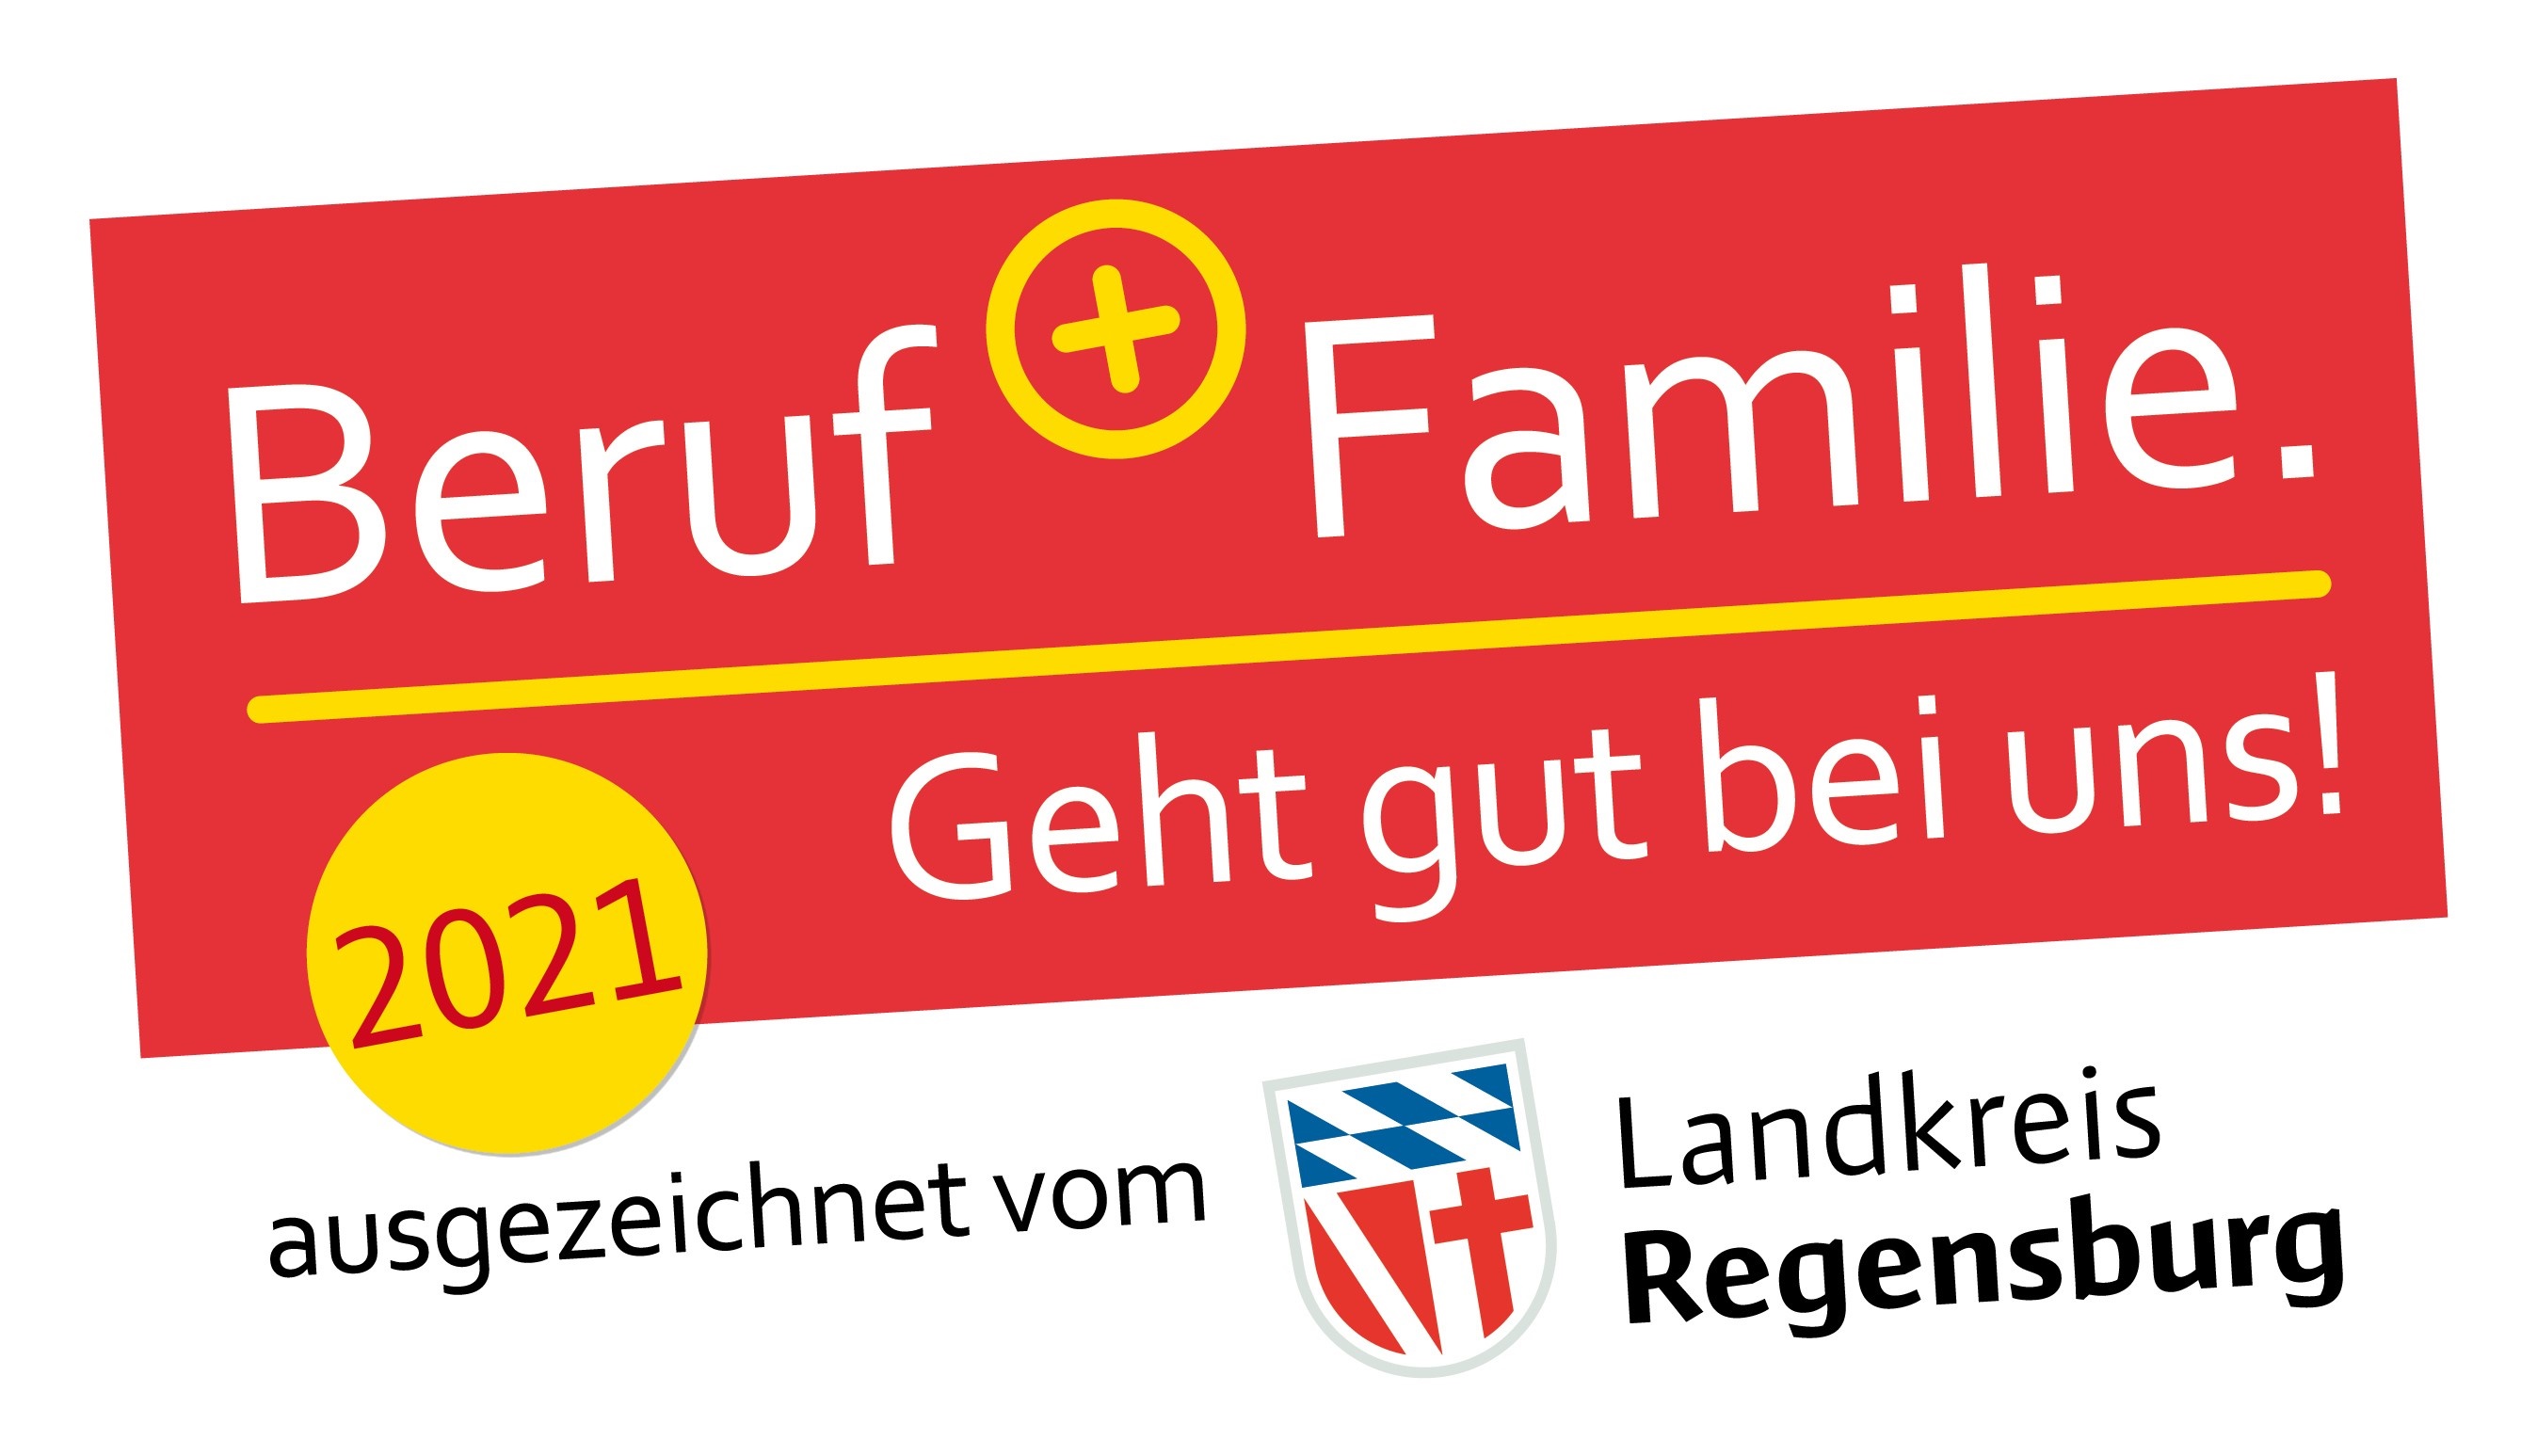 Beruf Familie Geht gut bei uns! 2021 ausgezeichnet vom Landkreis Regensburg